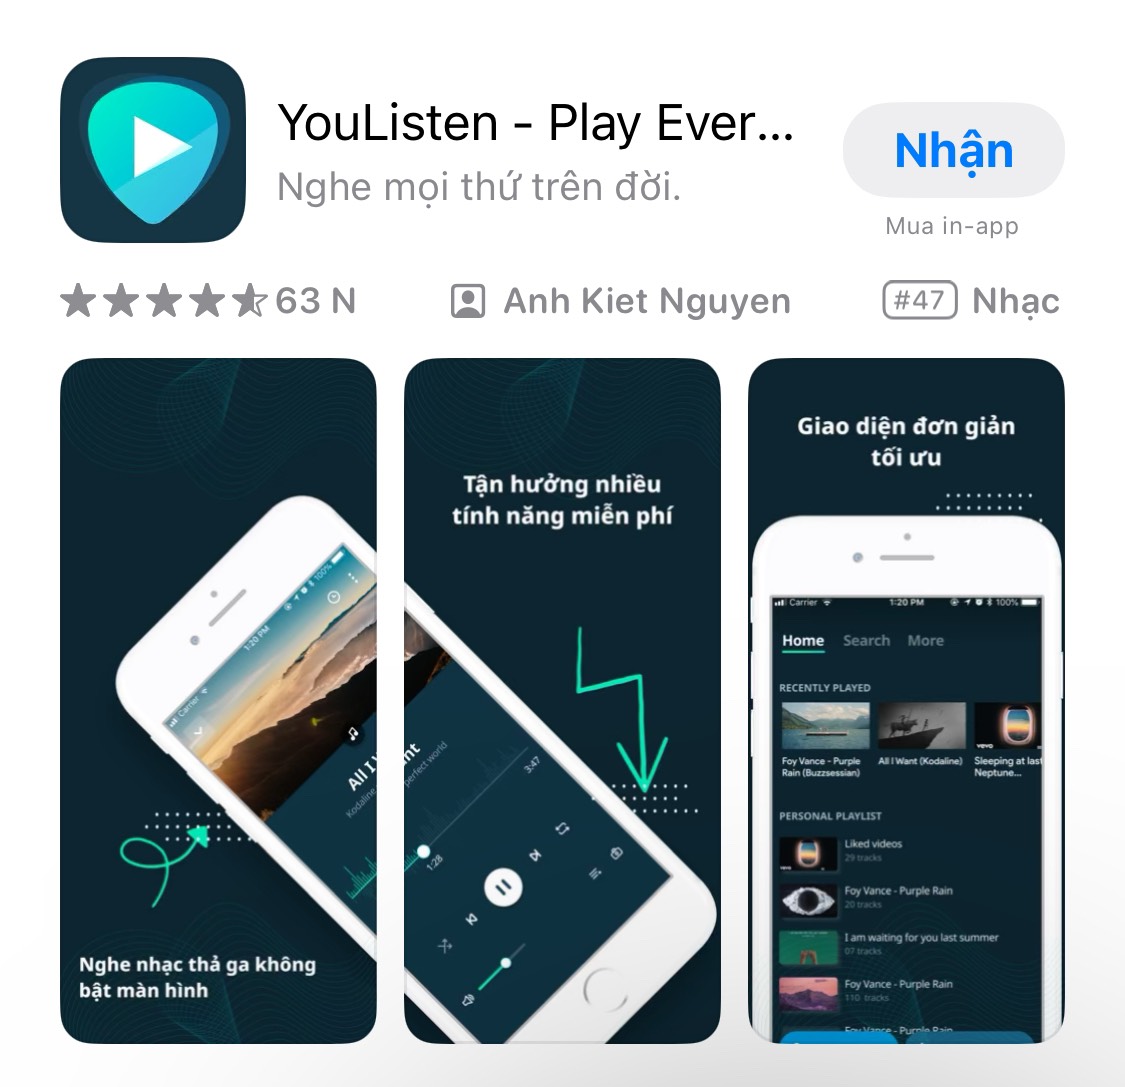 YouListen là app nghe nhạc Youtube tắt màn hình iOS tốt nhất cung cấp các tính năng nổi bật